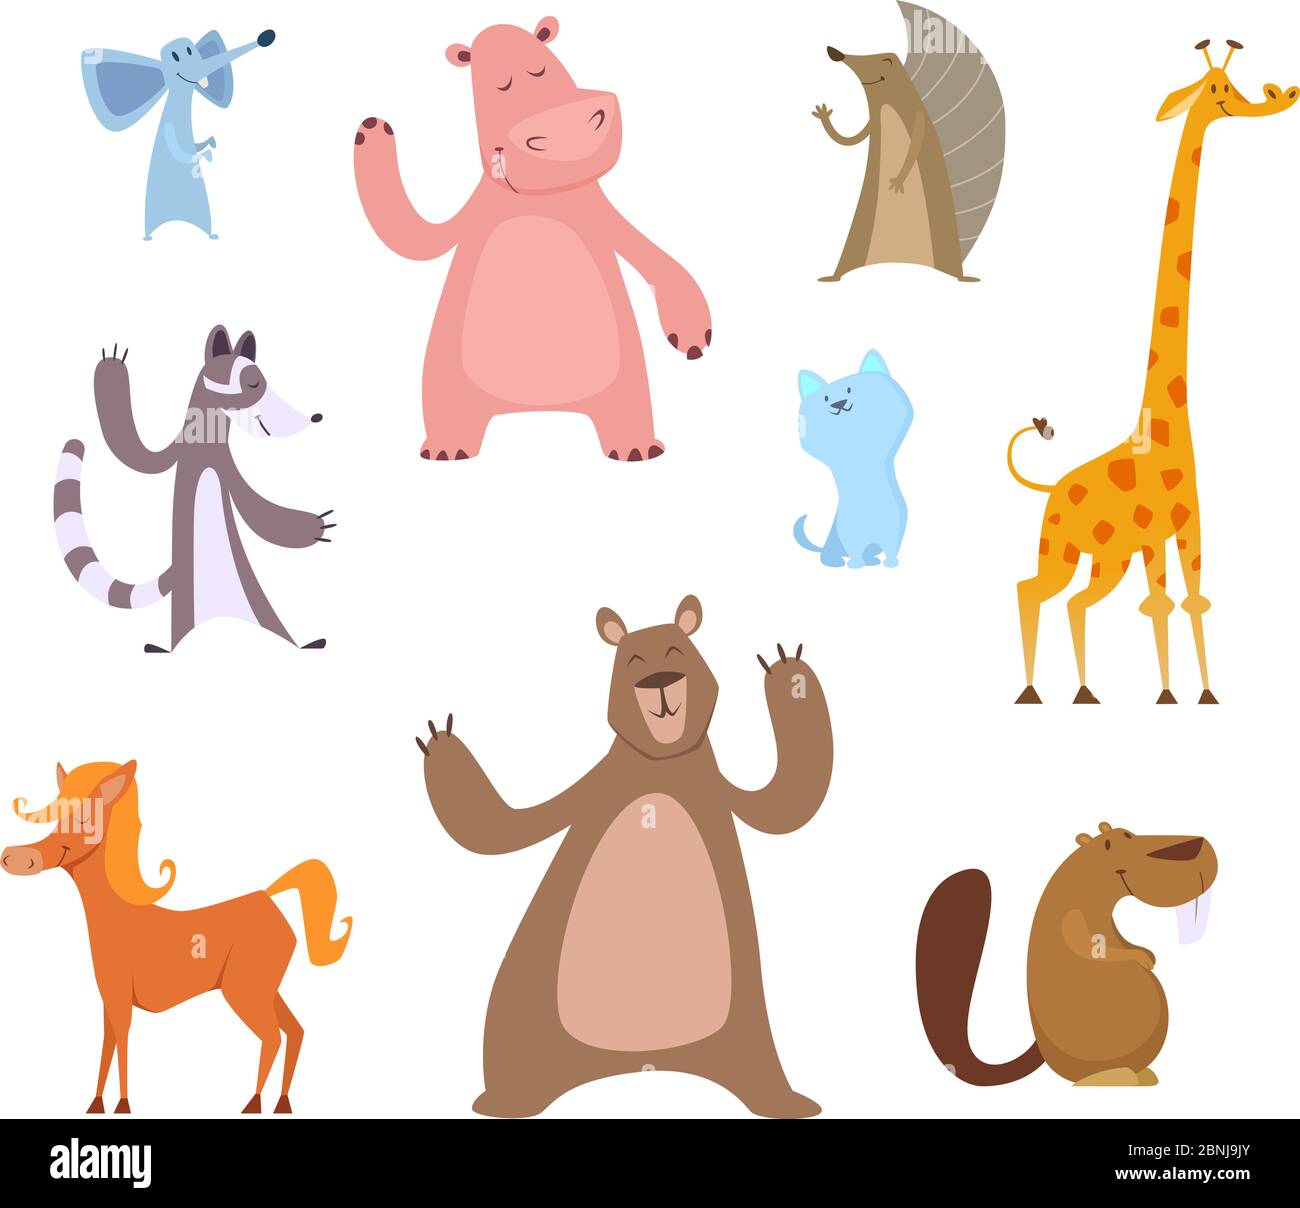 Vector cartoon illustrations of funny animals Stock Vector